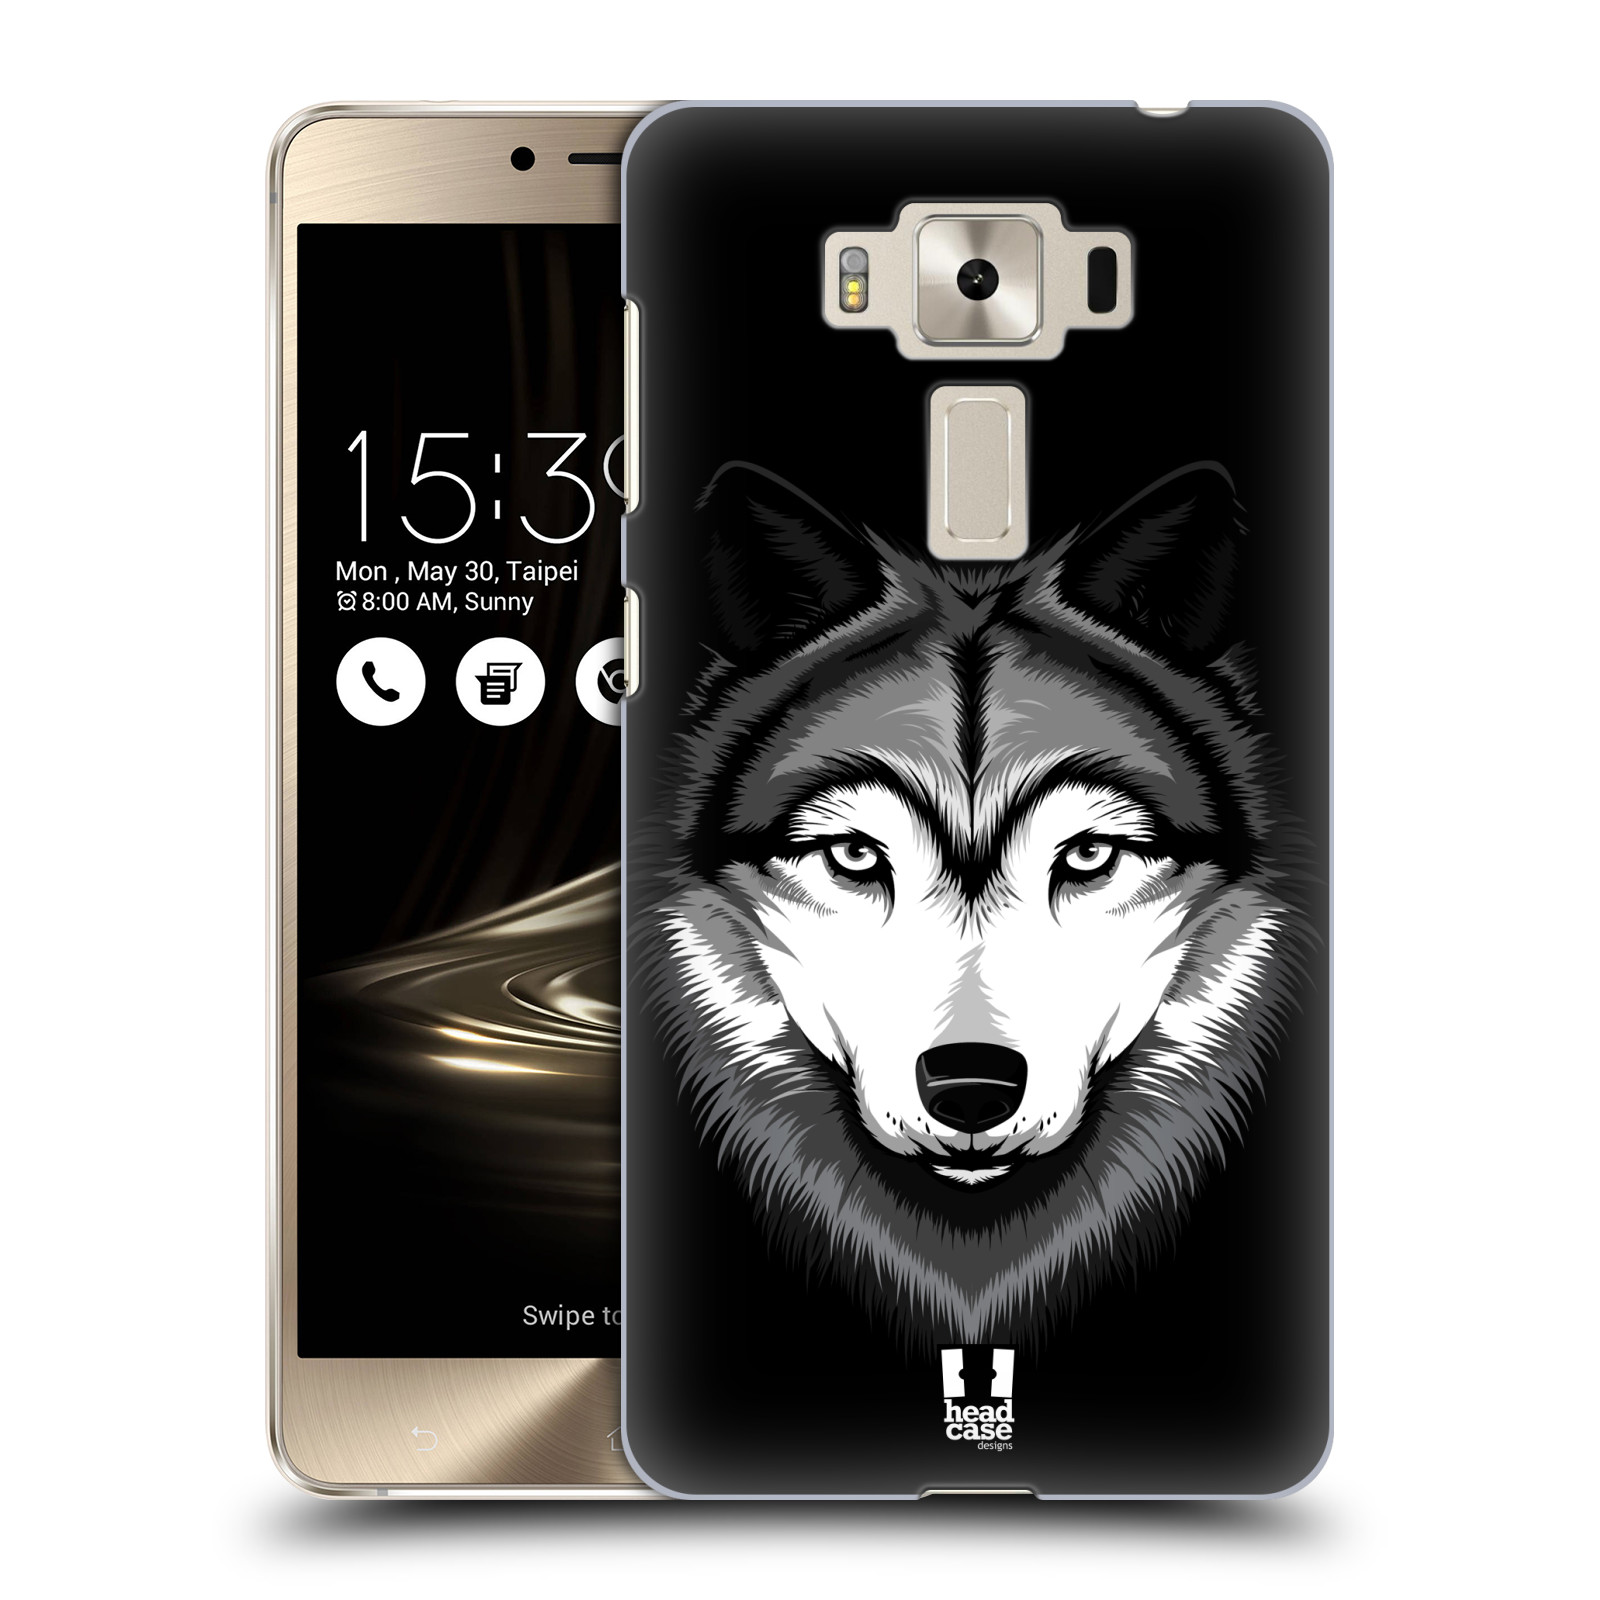 HEAD CASE plastový obal na mobil Asus Zenfone 3 DELUXE ZS550KL vzor Zvíře kreslená tvář 2 vlk